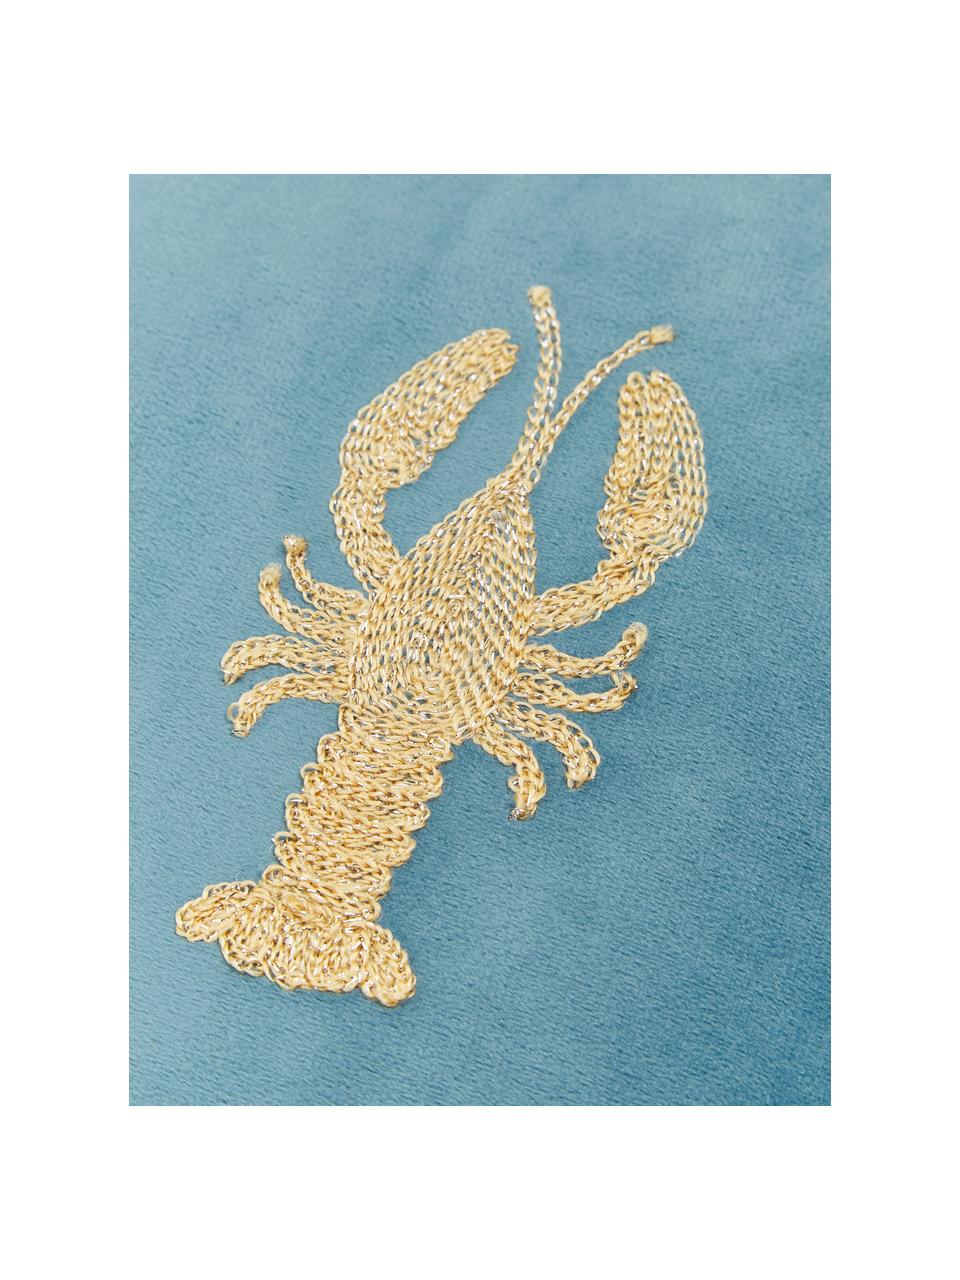 Cojín bordado de terciopelo Lobster, con relleno, 100% terciopelo

El color del terciopelo puede variar dependiendo de la luz y la dirección en que se encuentre, Azul, dorado, An 45 x L 45 cm